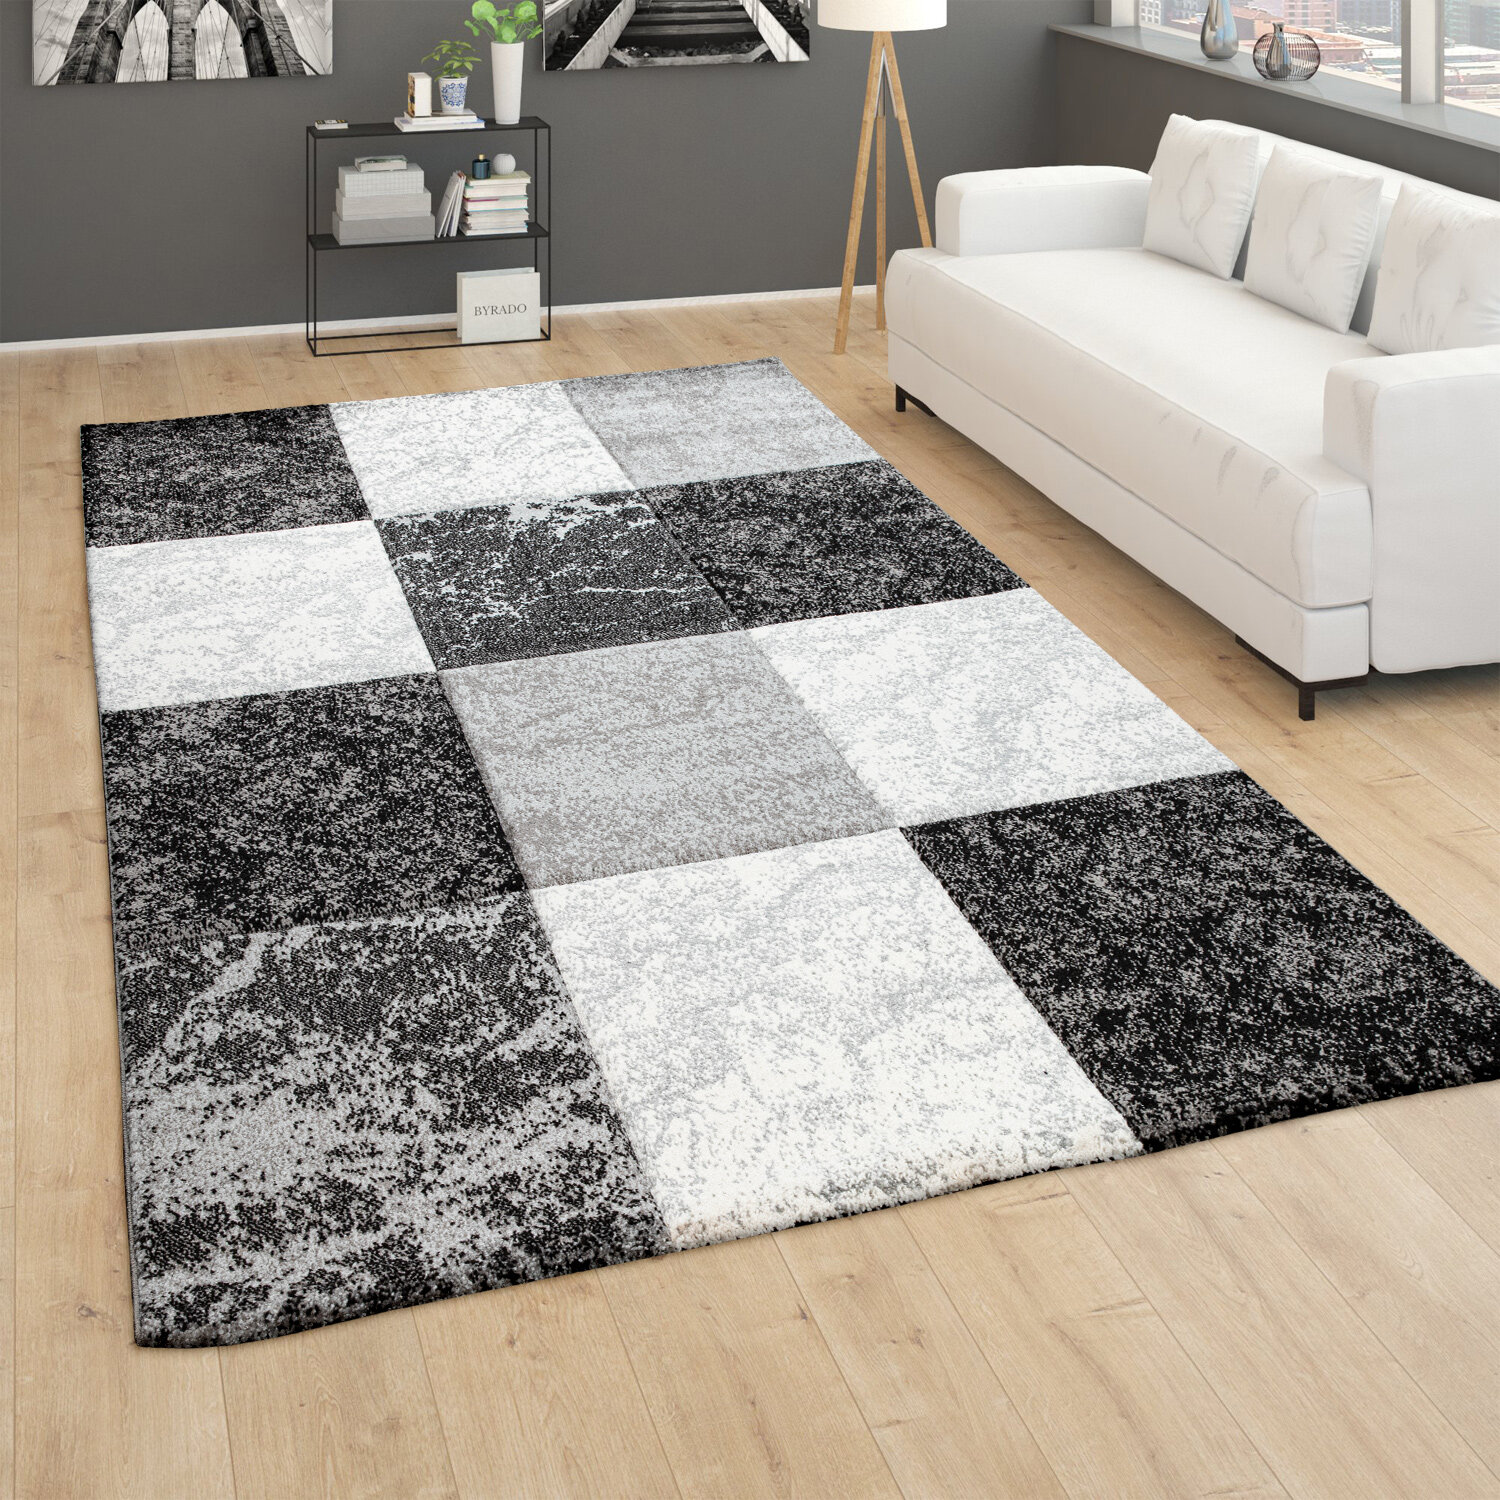 Perspections Teppich Wohnzimmer Kurzflor Kariert Design Grau Weiß Geometrisches Muster 3D